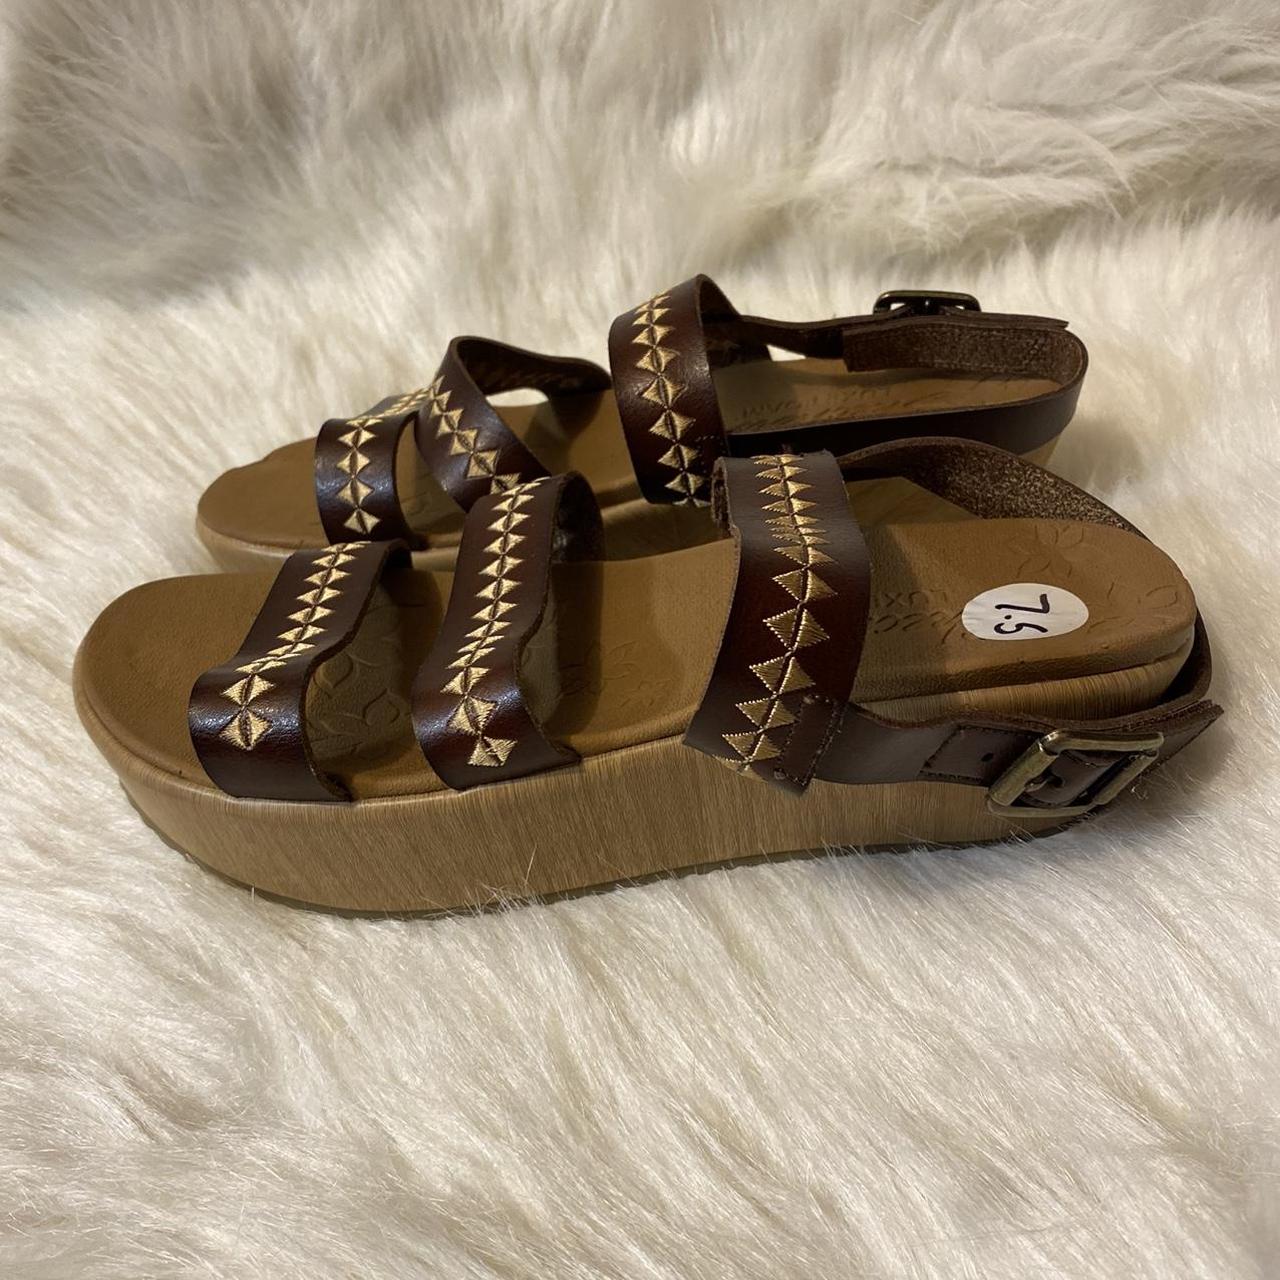 Skechers Luxe Foam Wedge Sandals Womens Size 7.5... - Depop